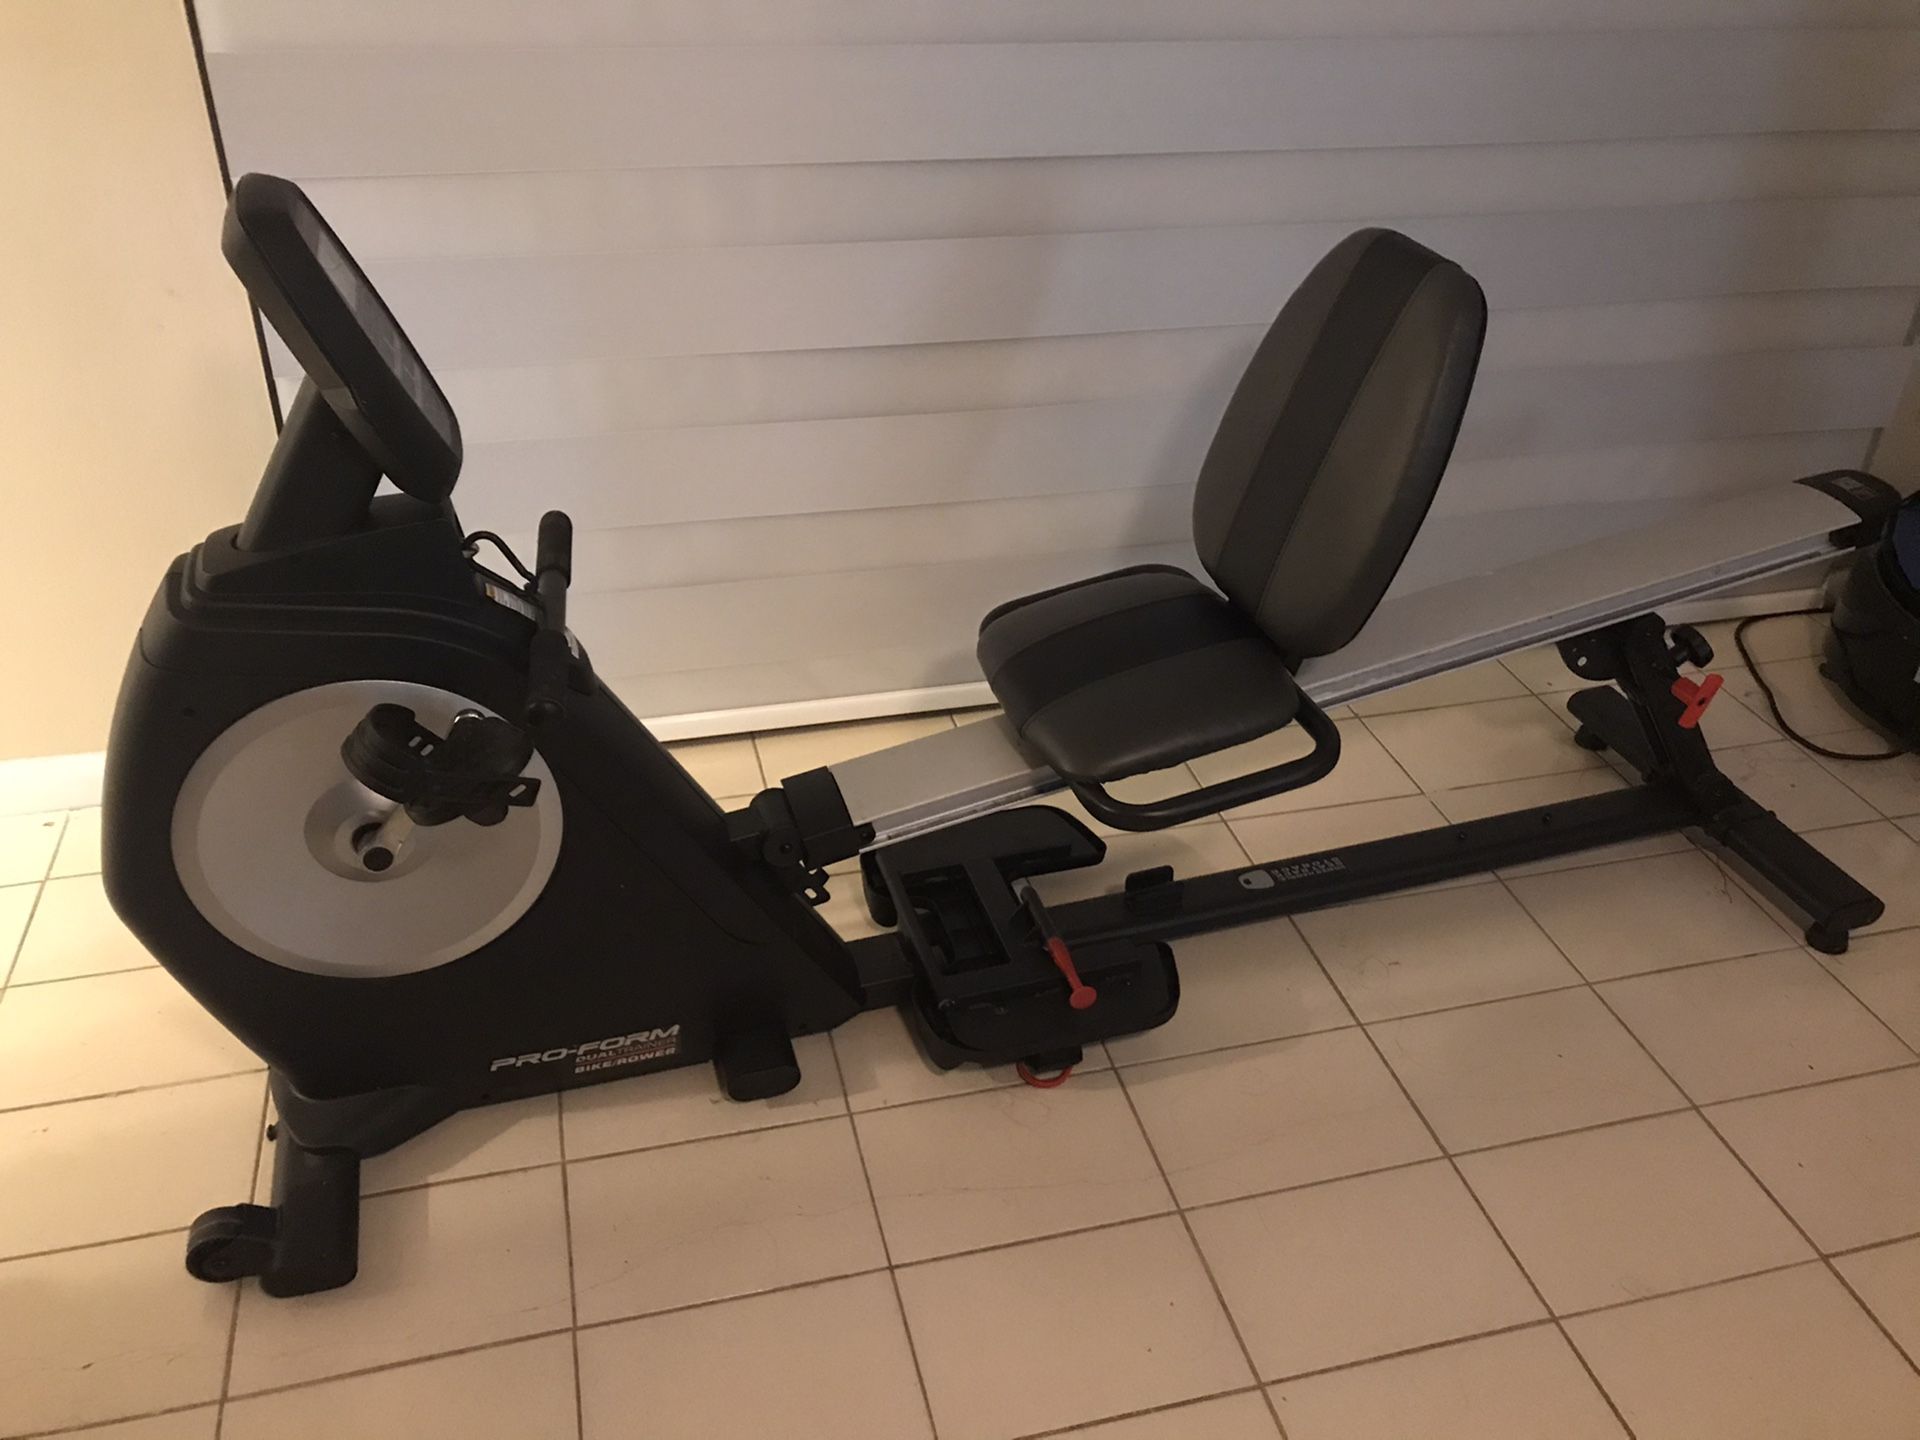 Rower machine (dual bike/rower)